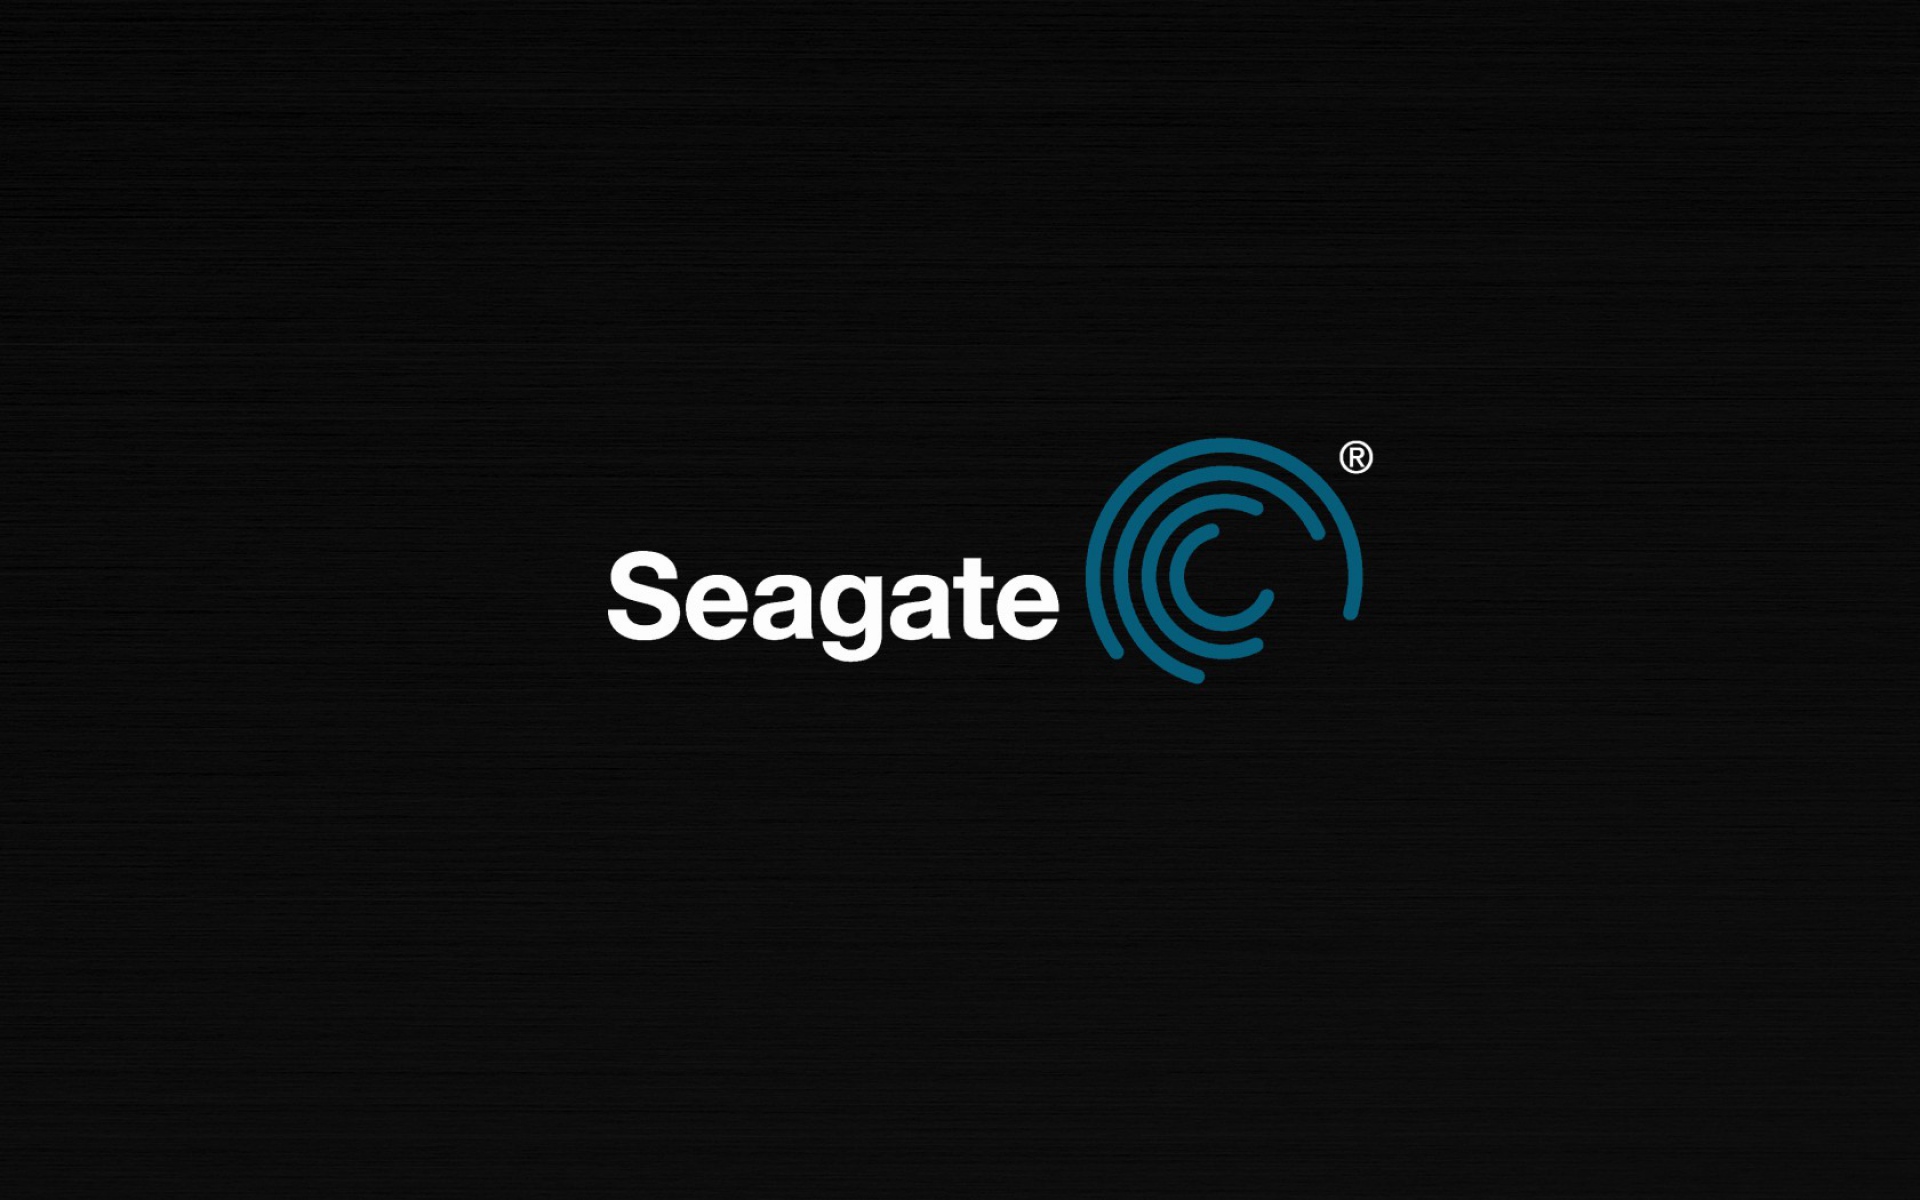 Картинки Seagate, поставщик жестких дисков, логотип фото и обои на рабочий стол